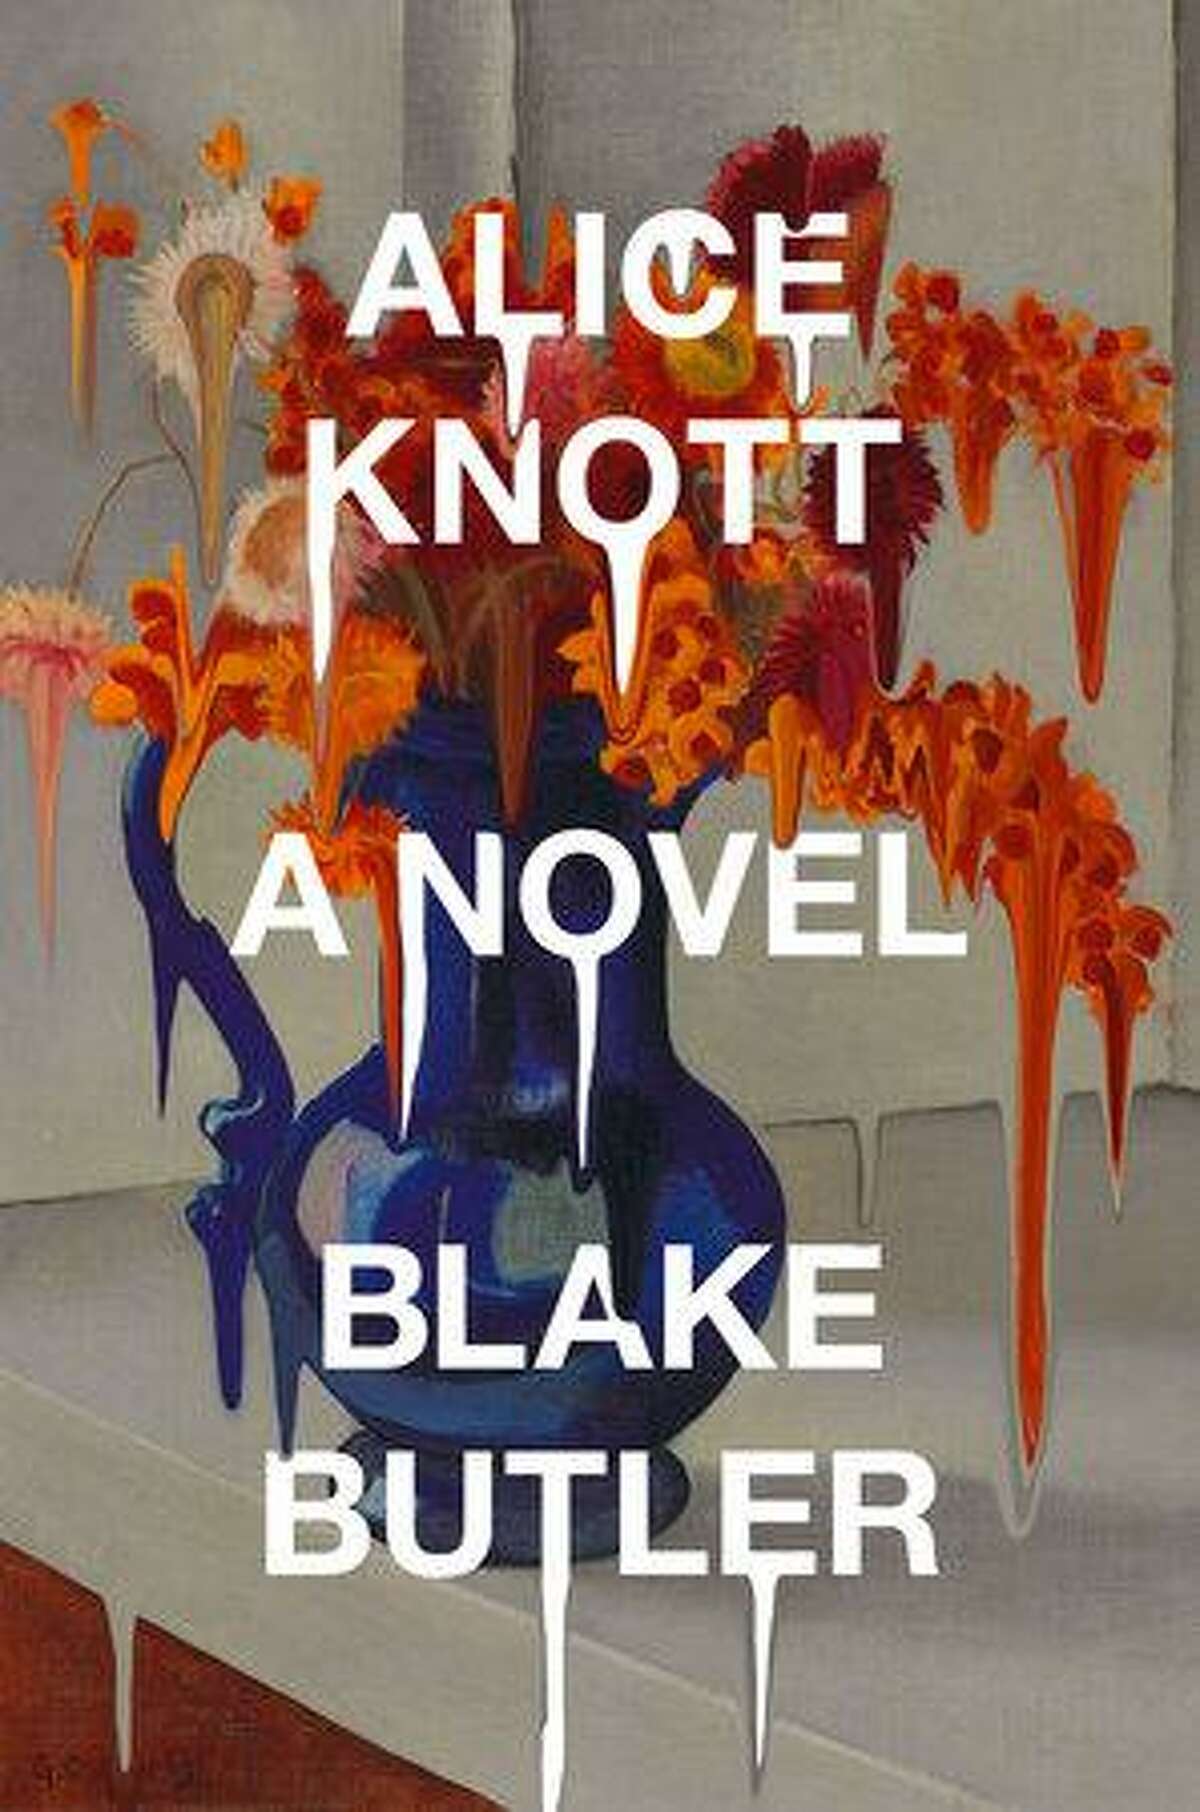 “Alice Knott” by Blake Butler.